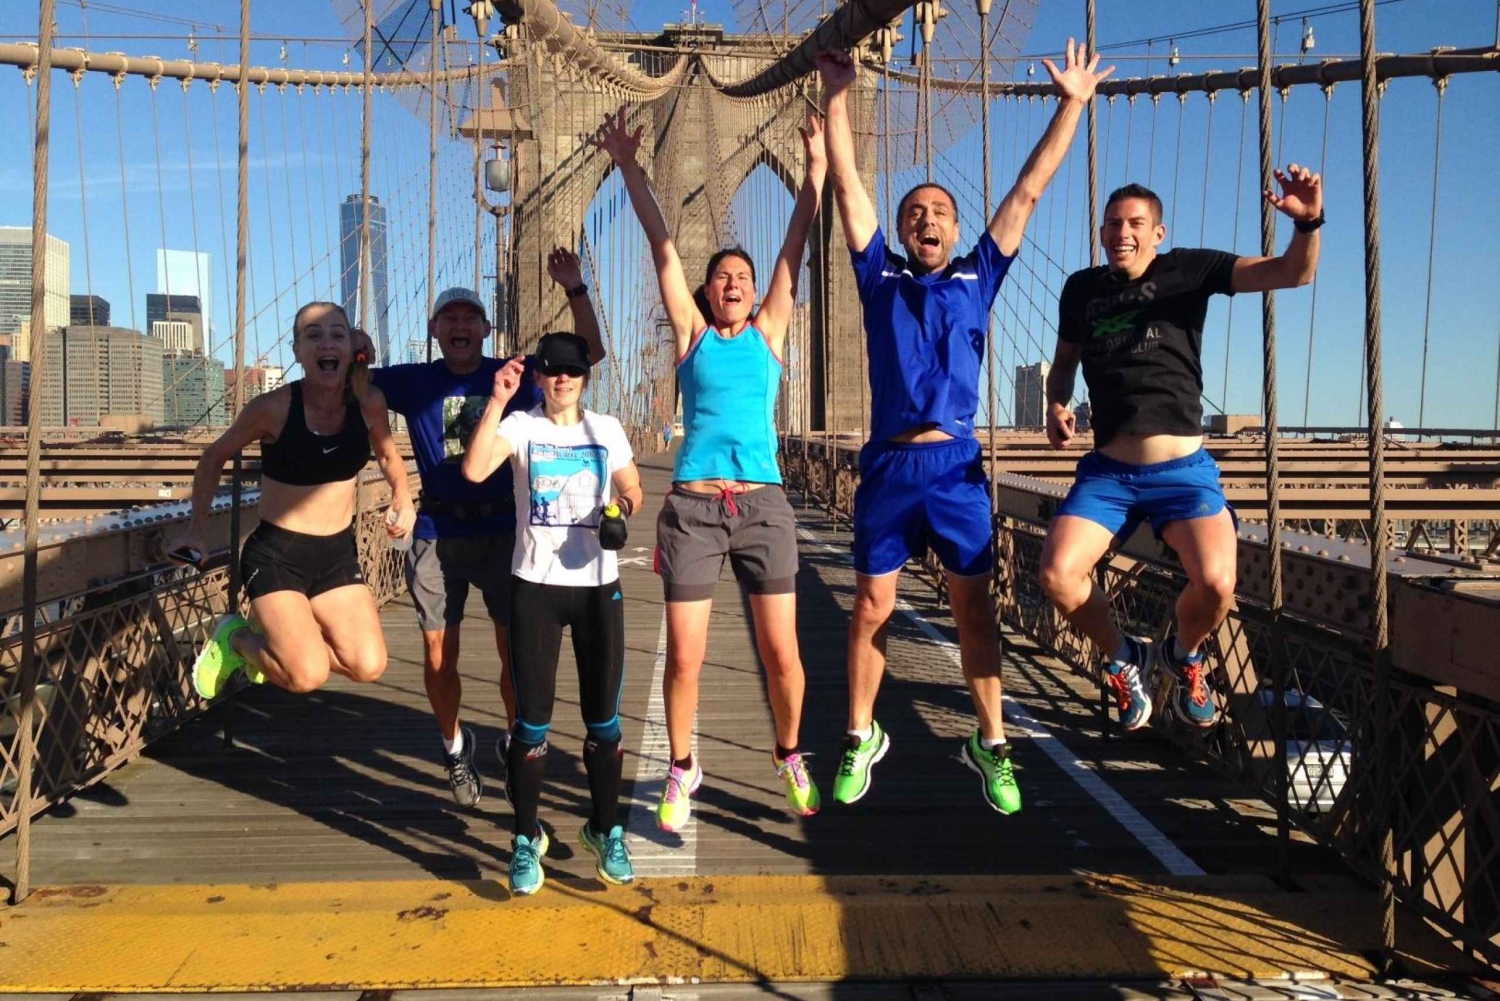 New York City Running Tour: Running over the Brooklyn Bridge